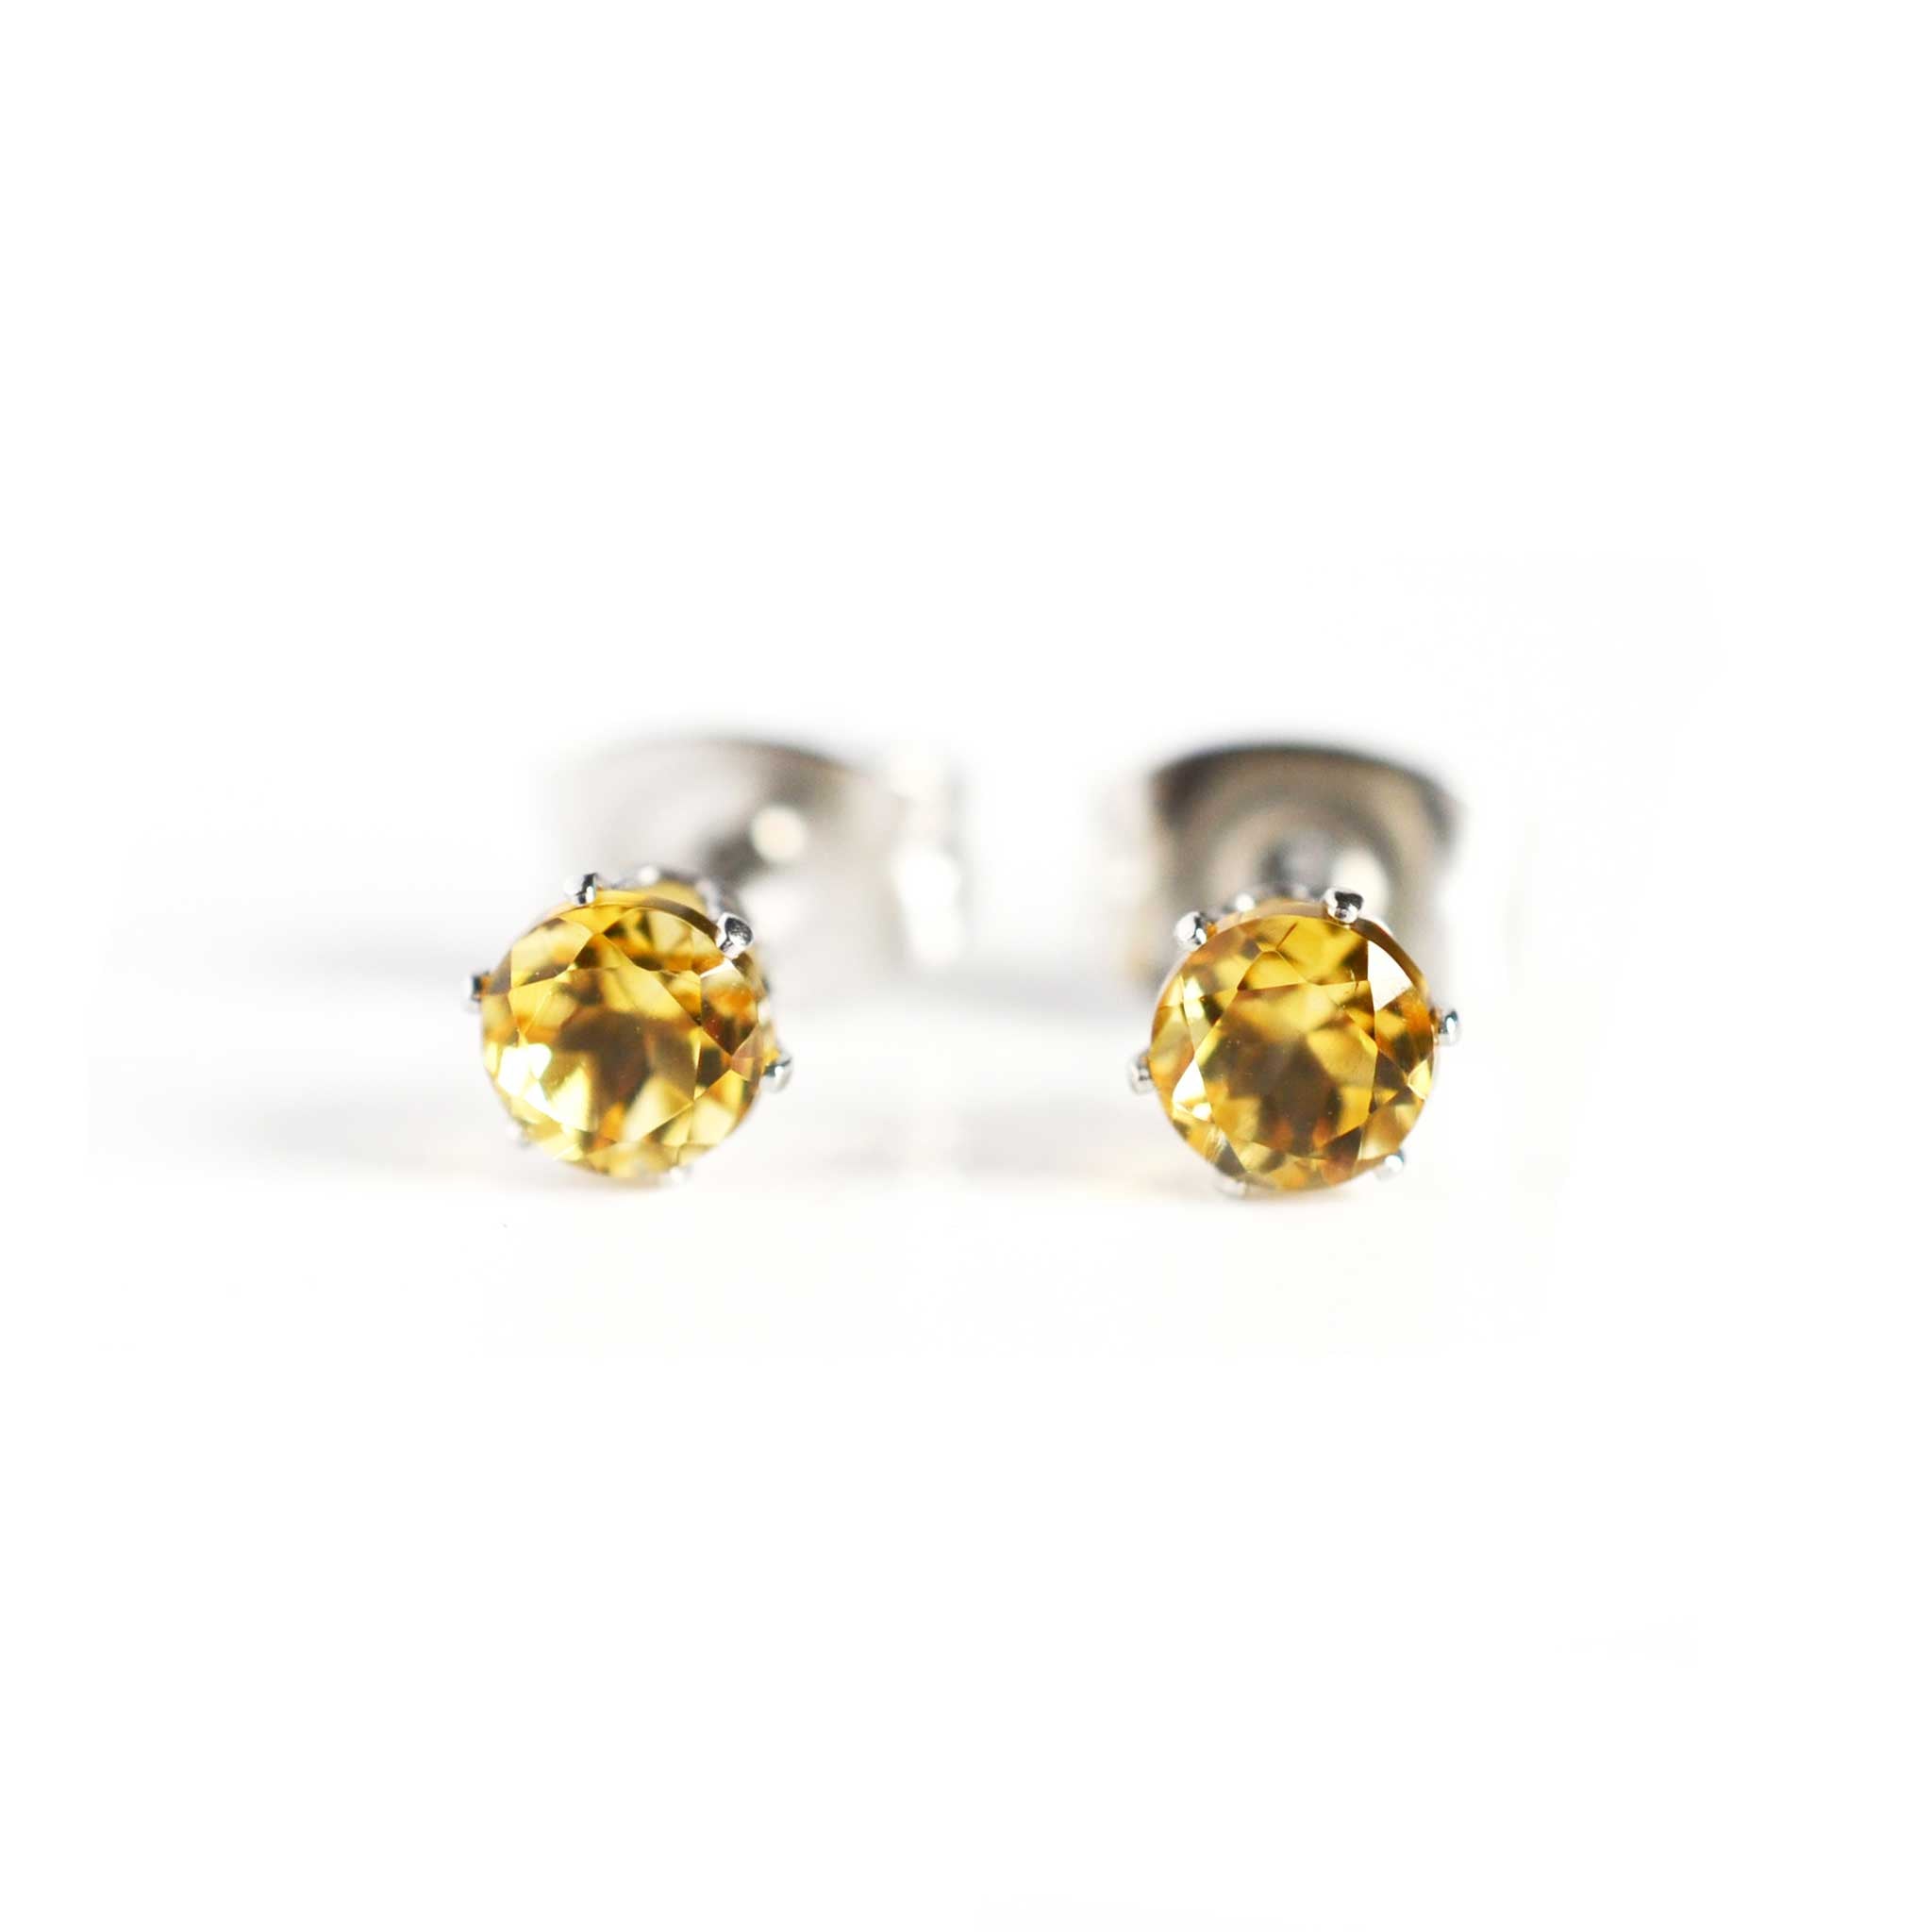 Gemstone & Surgical Steel Hypoallergenic Earrings – Little Gems Jewels